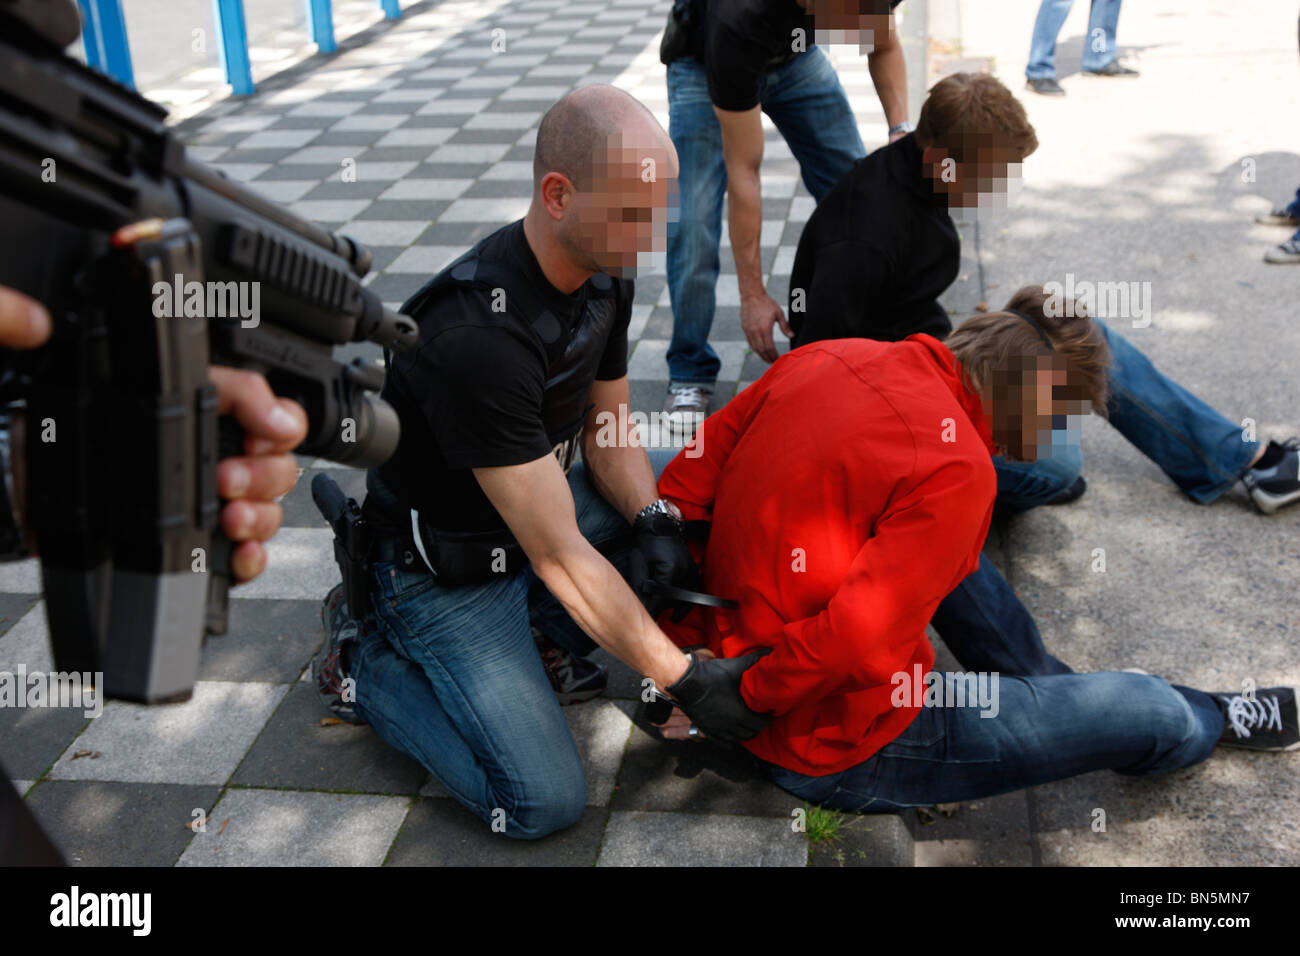 Übung der Polizei Spezialeinheiten verhaften einen Drogendealer an einer öffentlichen Bushaltestelle. Stockfoto